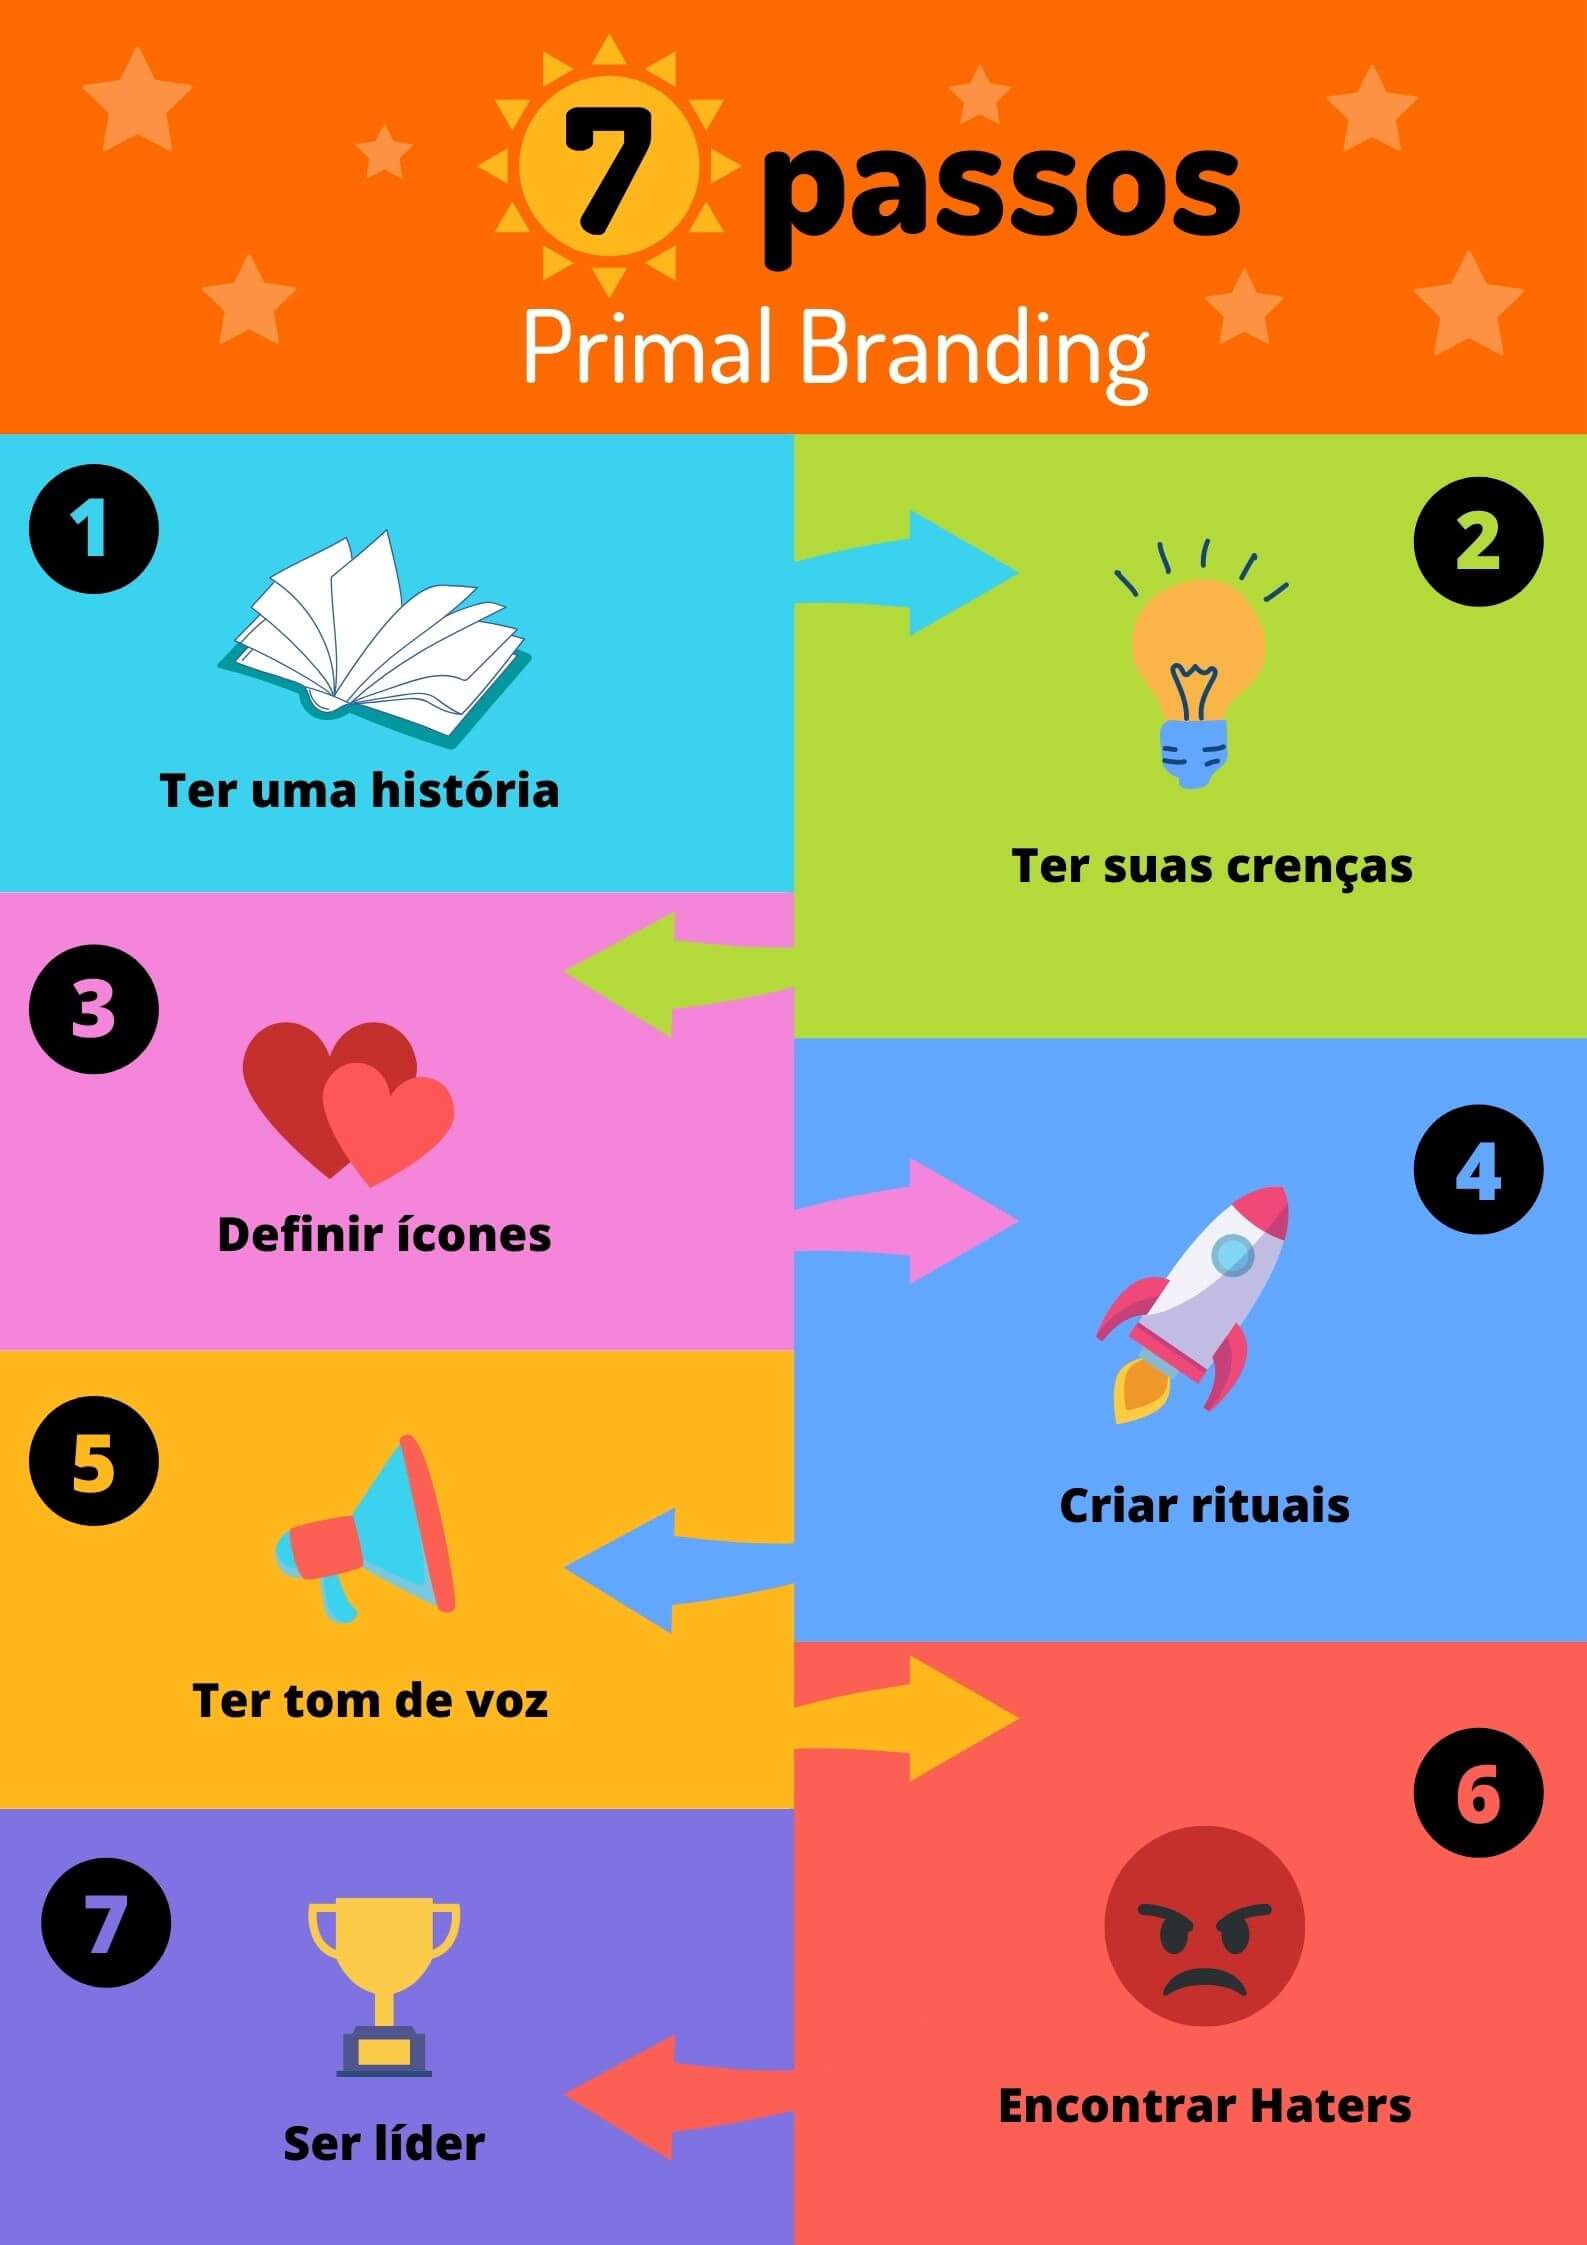 Imagem colorida ilustrando quais os sete passos do Primal Branding: ter uma história, ter suas crenças, definir ícones, criar rituais, ter tom de voz, encontrar haters e ser líder.